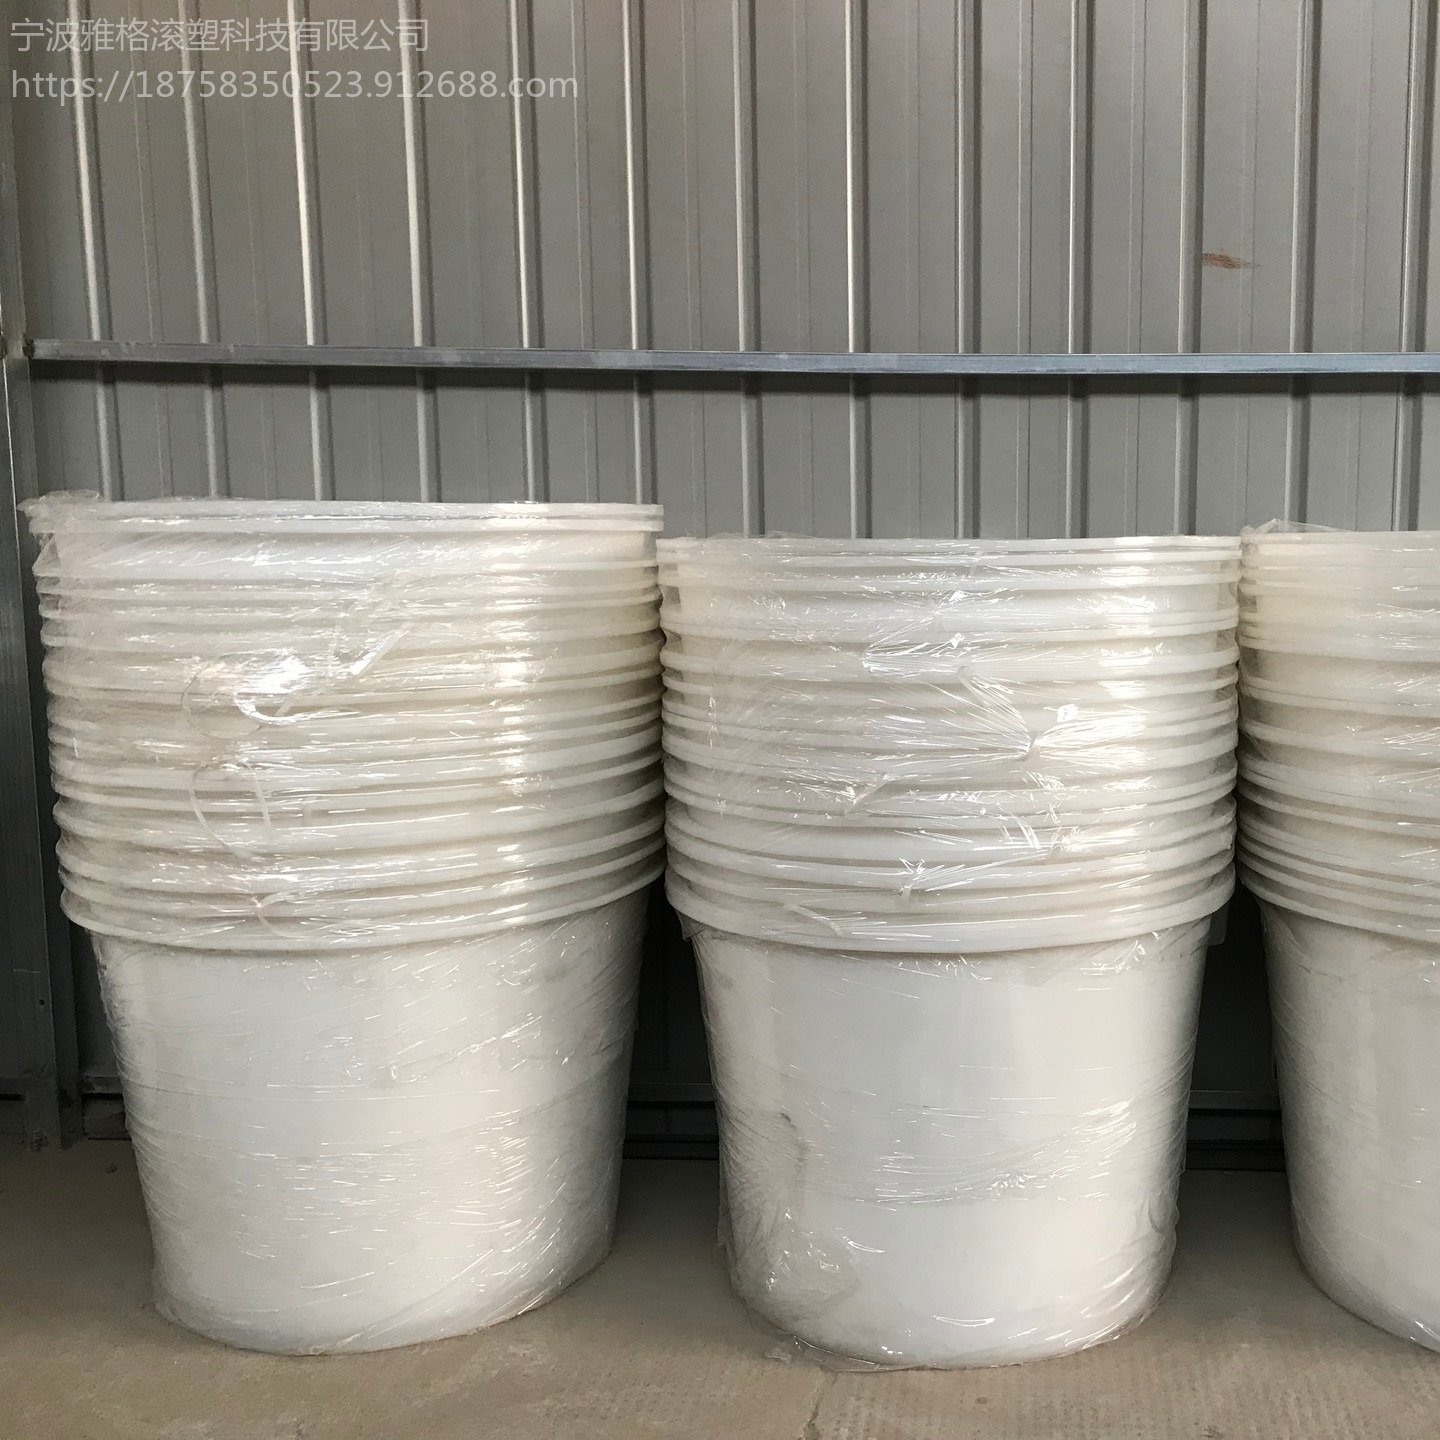 腌制圆桶 雅格加厚牛筋塑料圆桶 酿酒发酵桶 化工储水腌制桶厂家图片